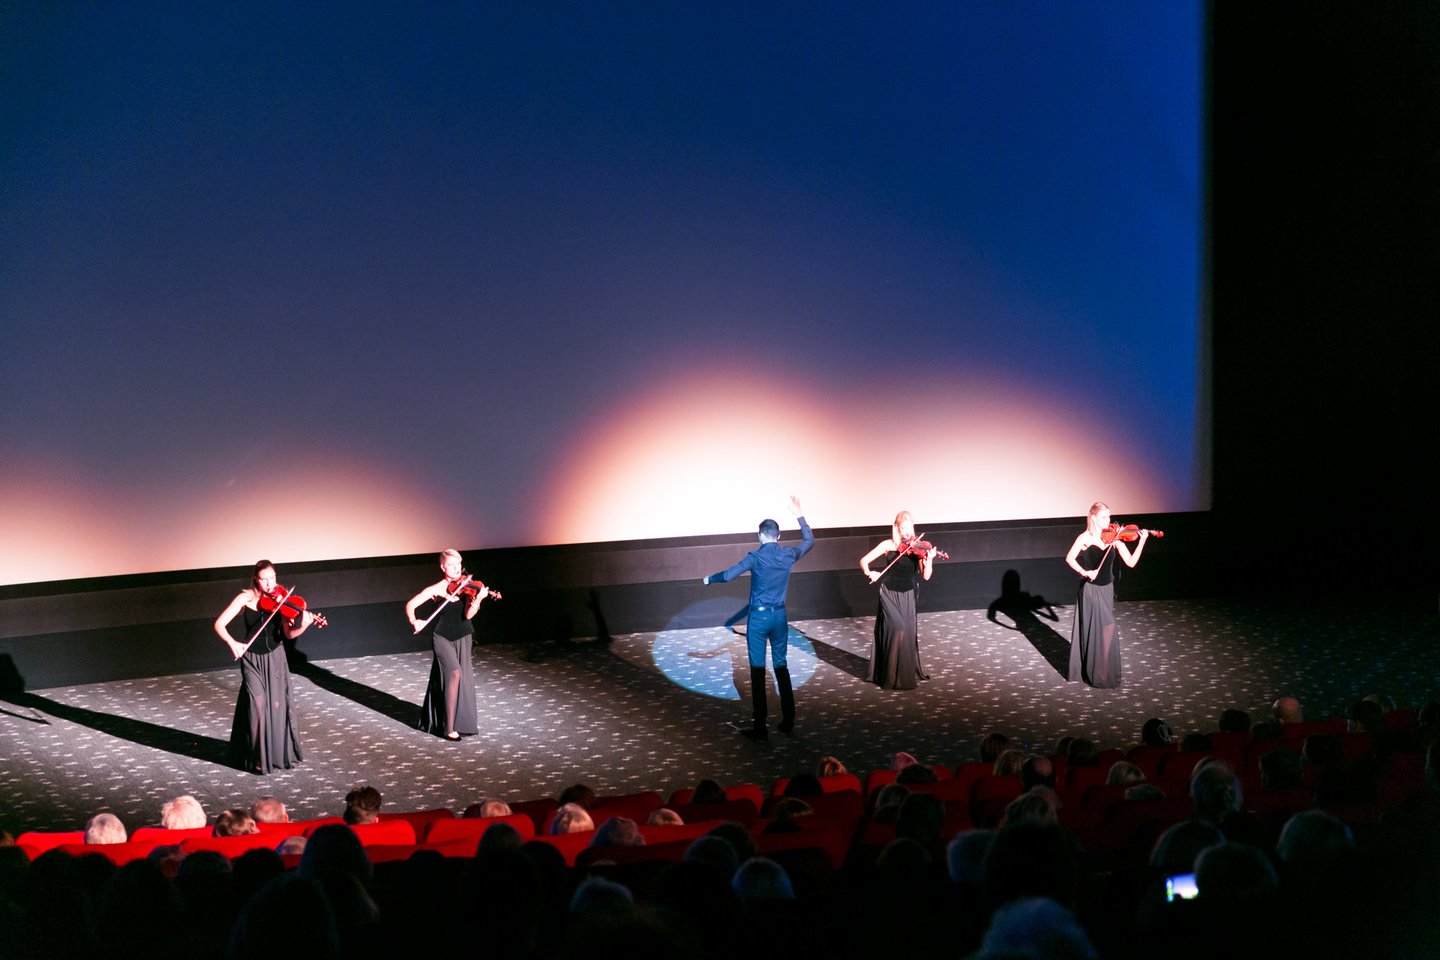  Kino operų sezono pradžia pritraukė pasipuošusią rinktinę publiką. Įdomų pasirodymą kino salėje surengė G.Gelgoto (centre) vadovaujamas ansamblis NIKO.<br> T.Bauro nuotr.